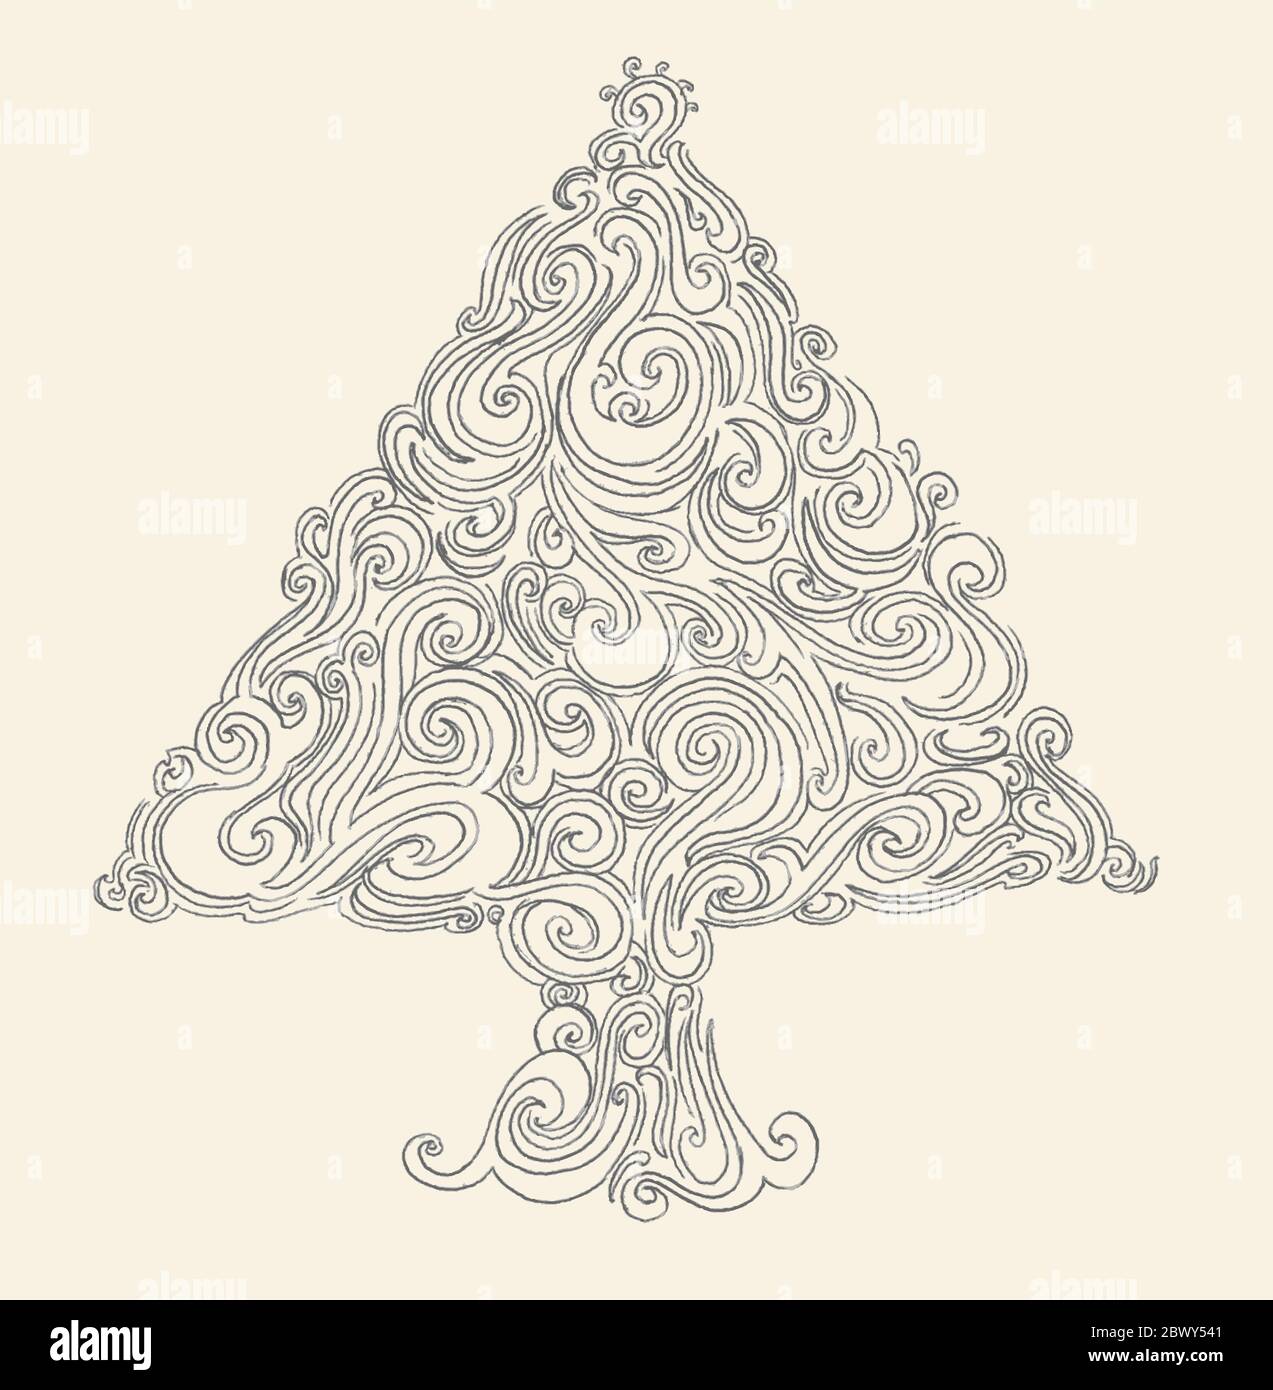 Weihnachtsbaum Vektor von Hand gezeichnet Stock Vektor